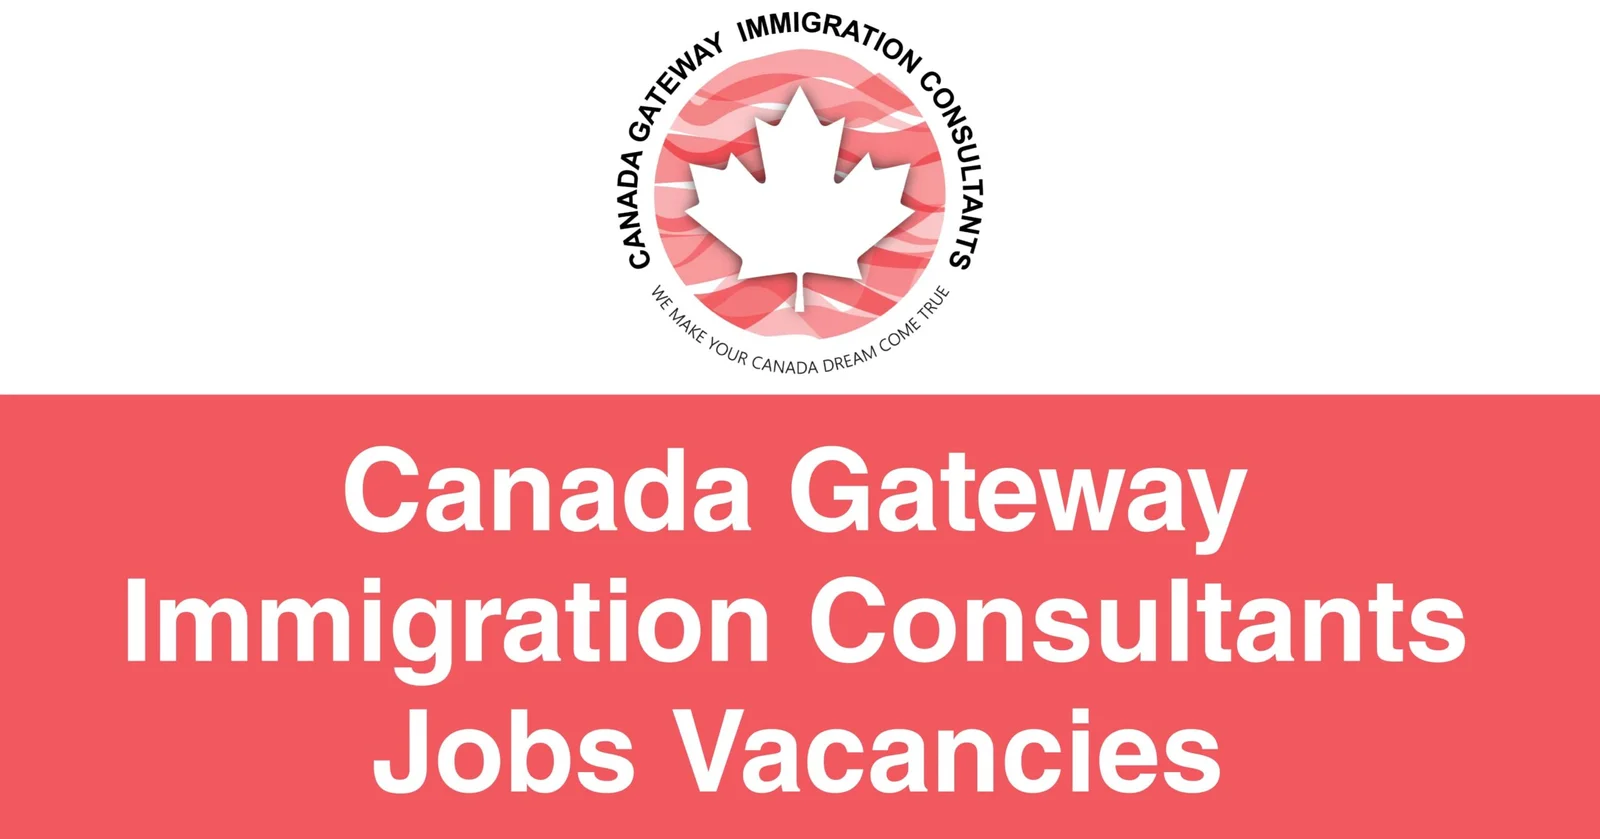 Canada Gateway Immigration Consultants Jobs Vacancies